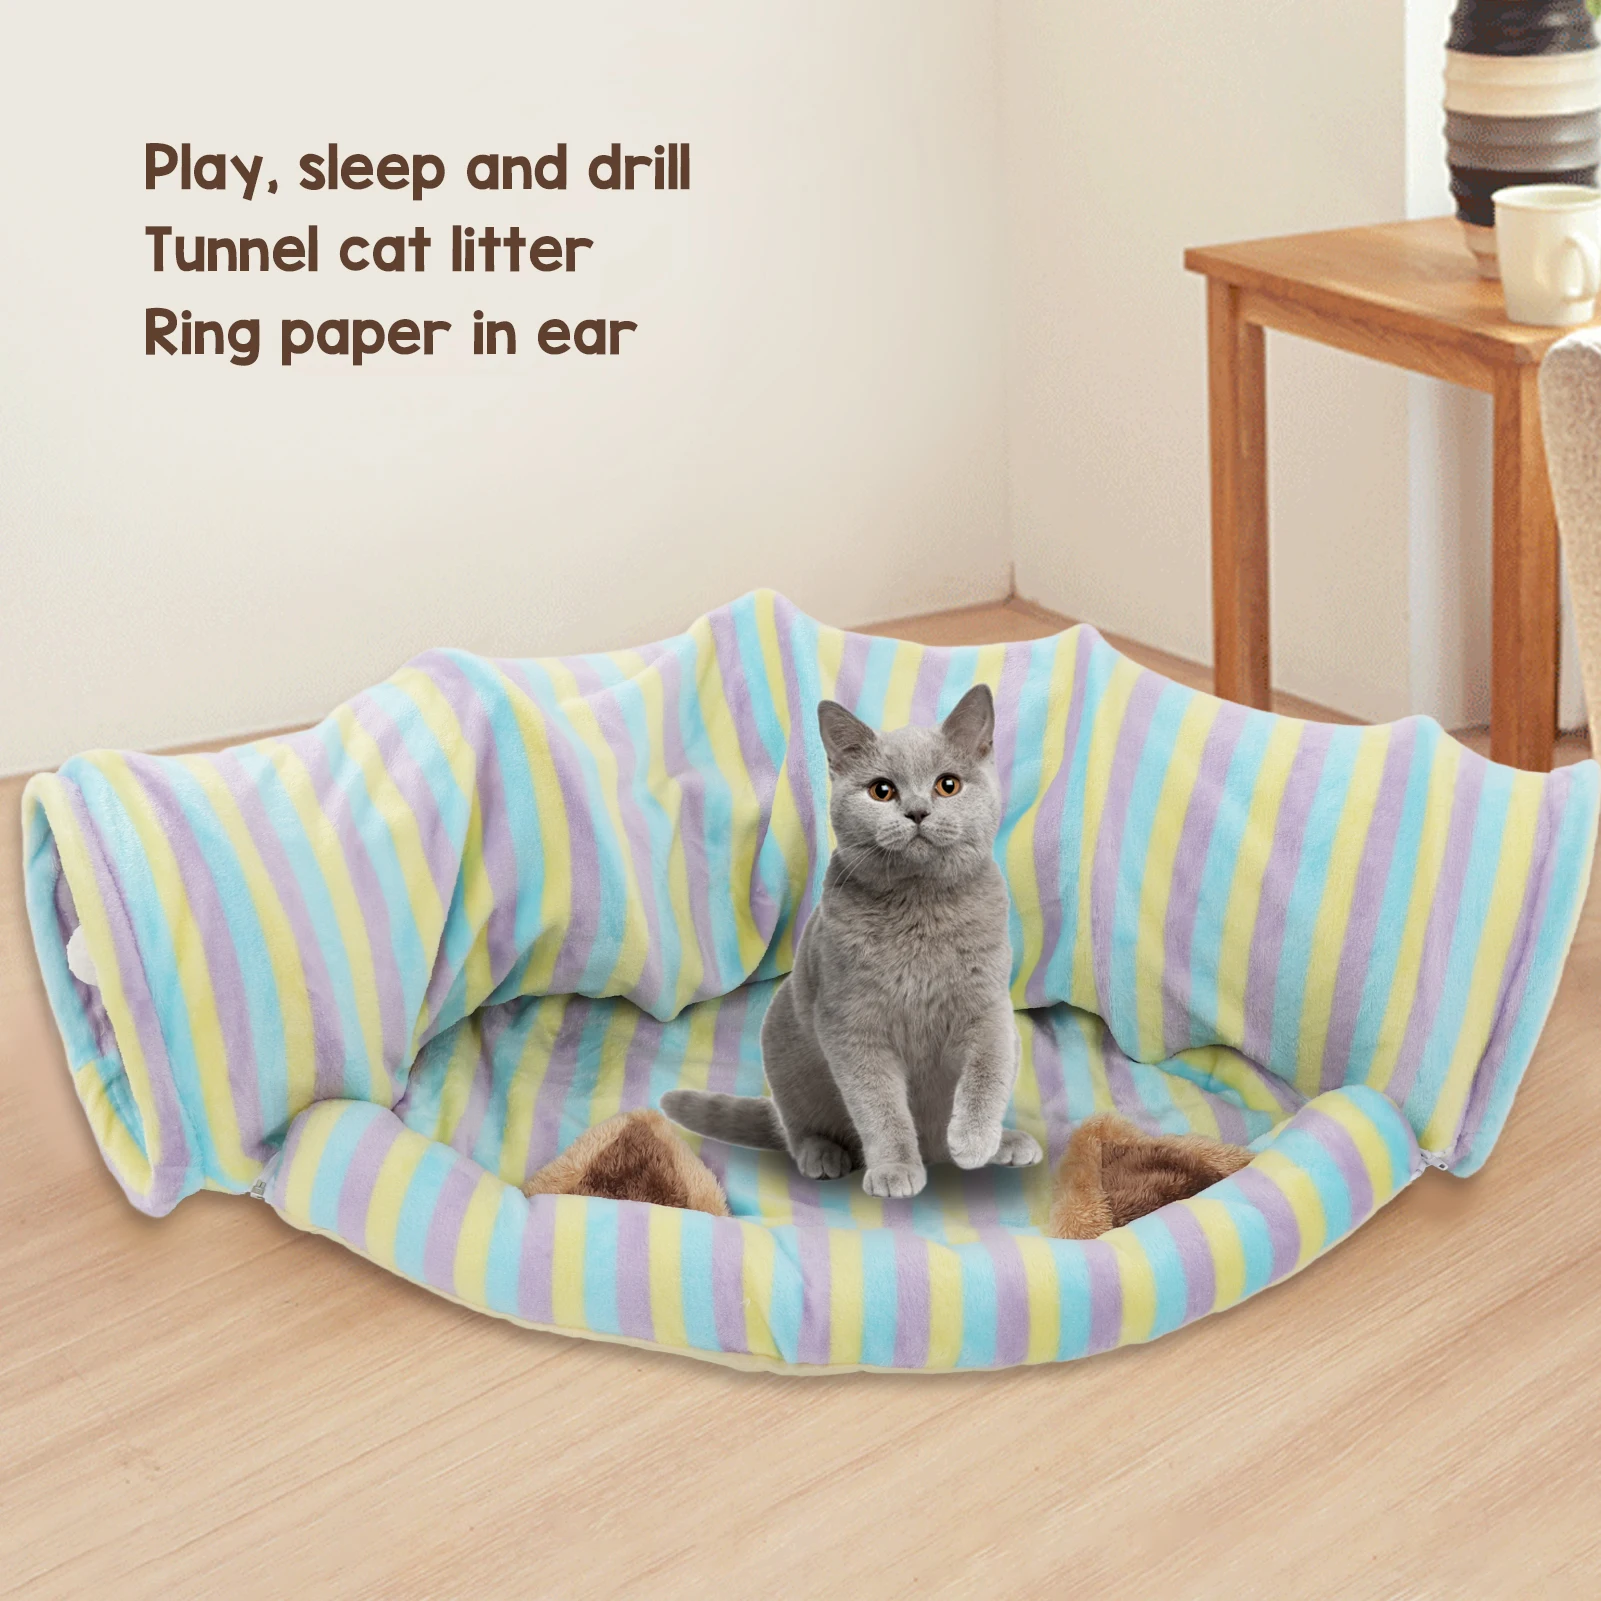  Cat Tunnel Bed Мягкая и удобная складная игрушка для кошек с ковриком для кошек, собак, кроликов 1